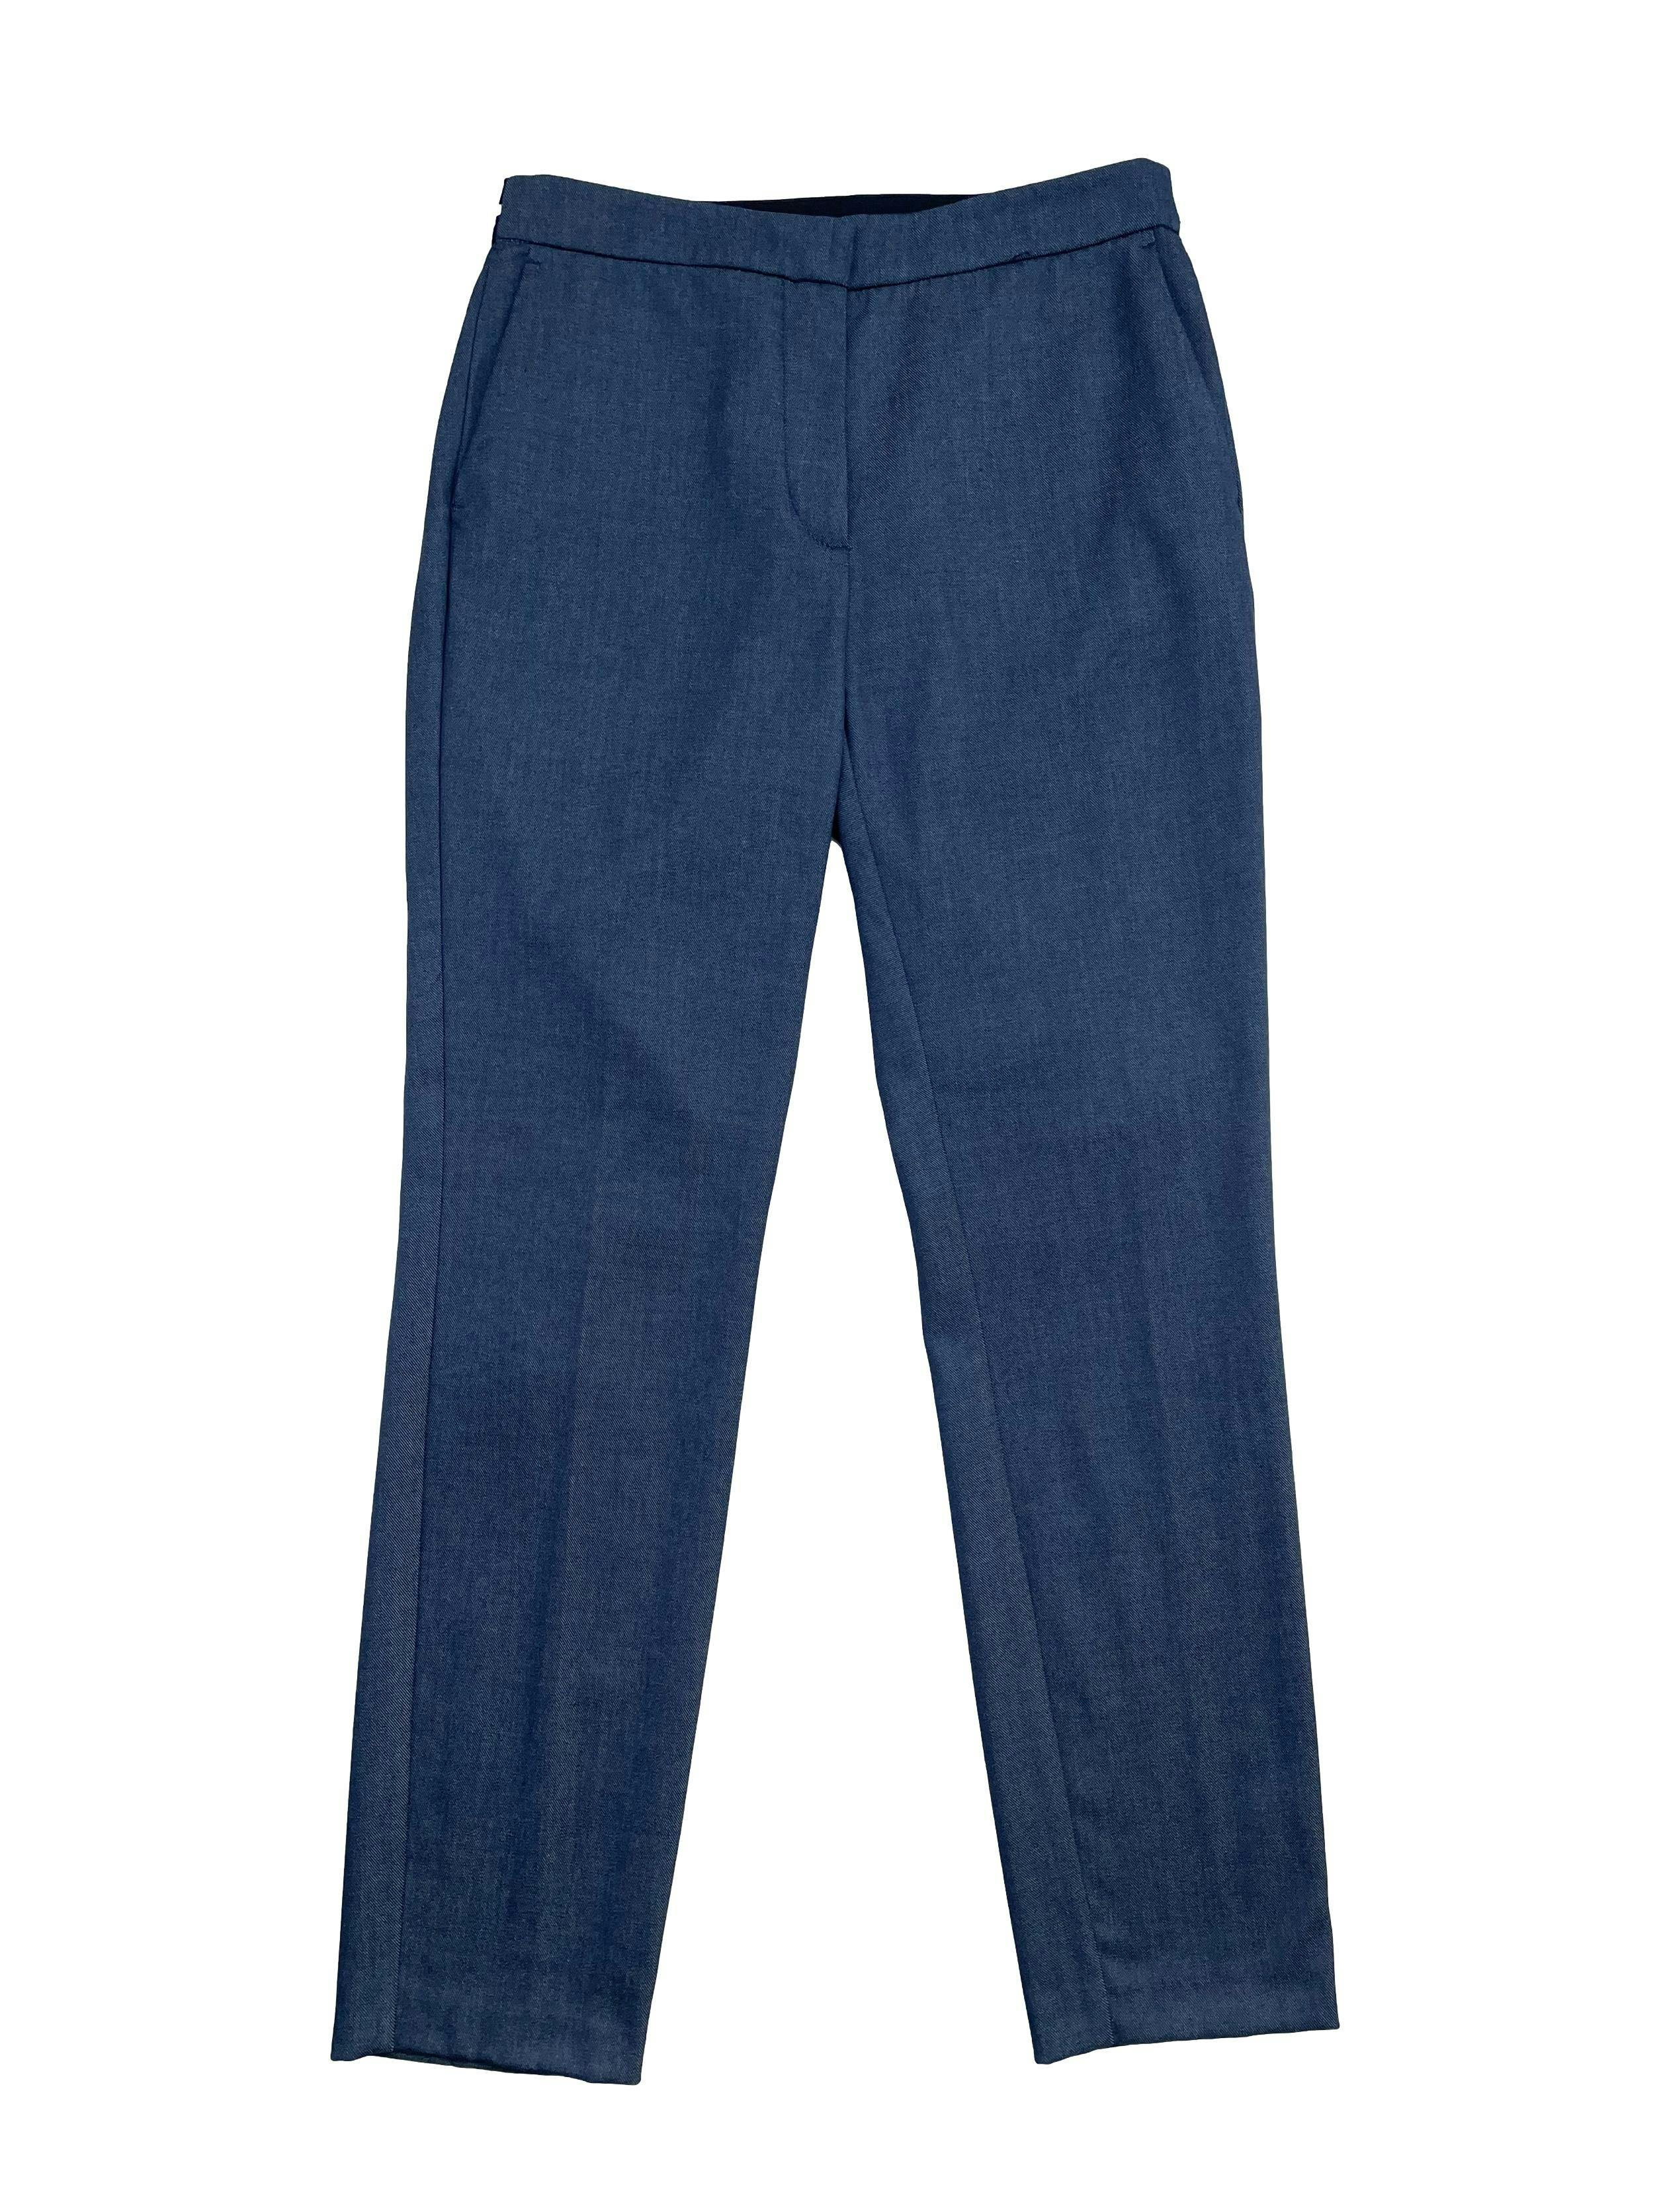 Pantalón Zara azul tipo jean con elástico posterior enla pretina, cierre, botón y bolsillos delanteros. Cintura: 72cm (sin estirar), Tiro 24cm Largo: 94cm